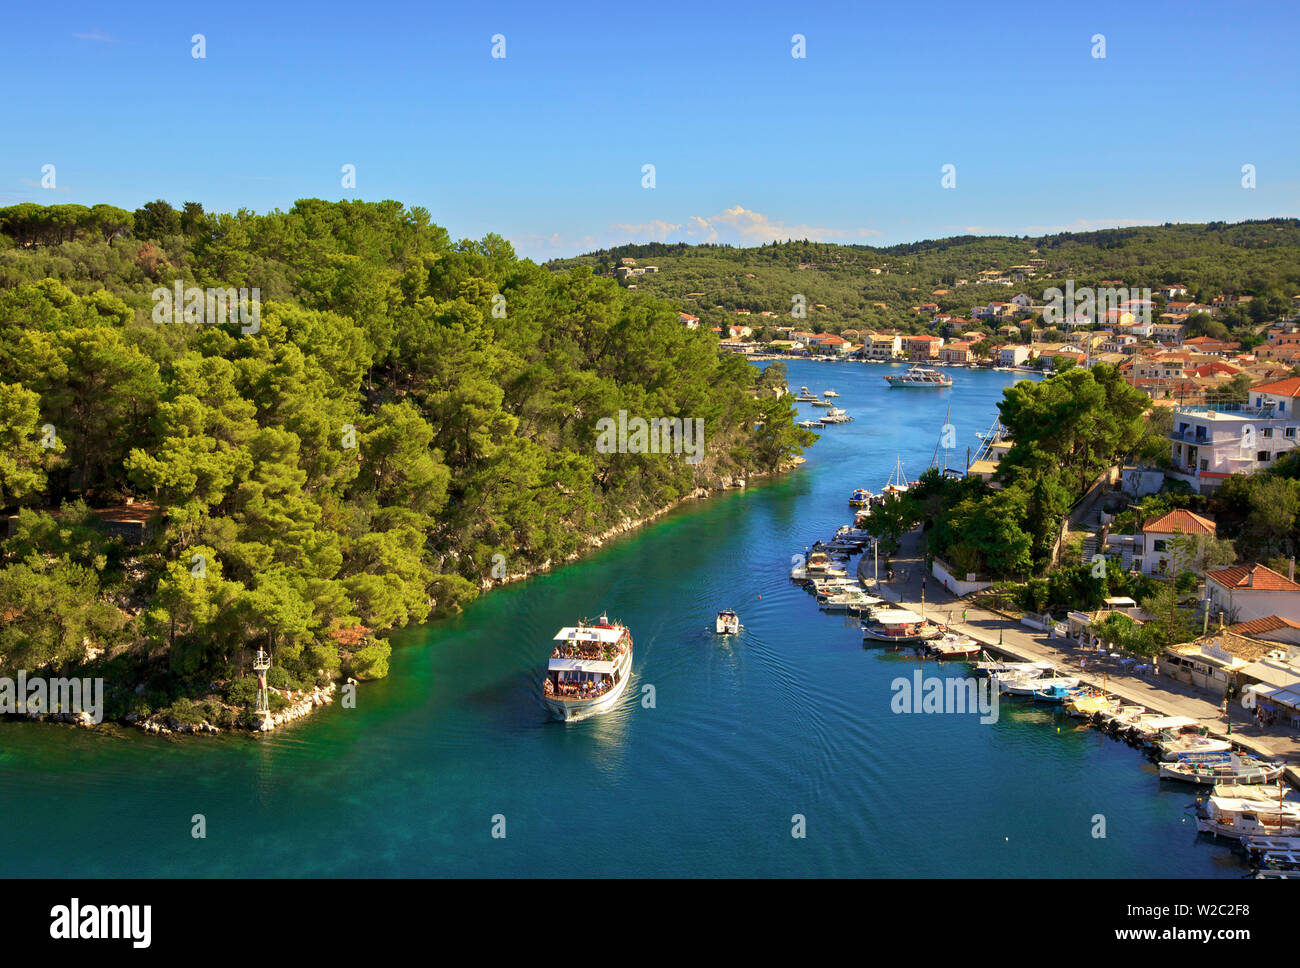 Vue sur le port de Gaios, Paxos, îles Ioniennes, îles grecques, Grèce, Europe Banque D'Images